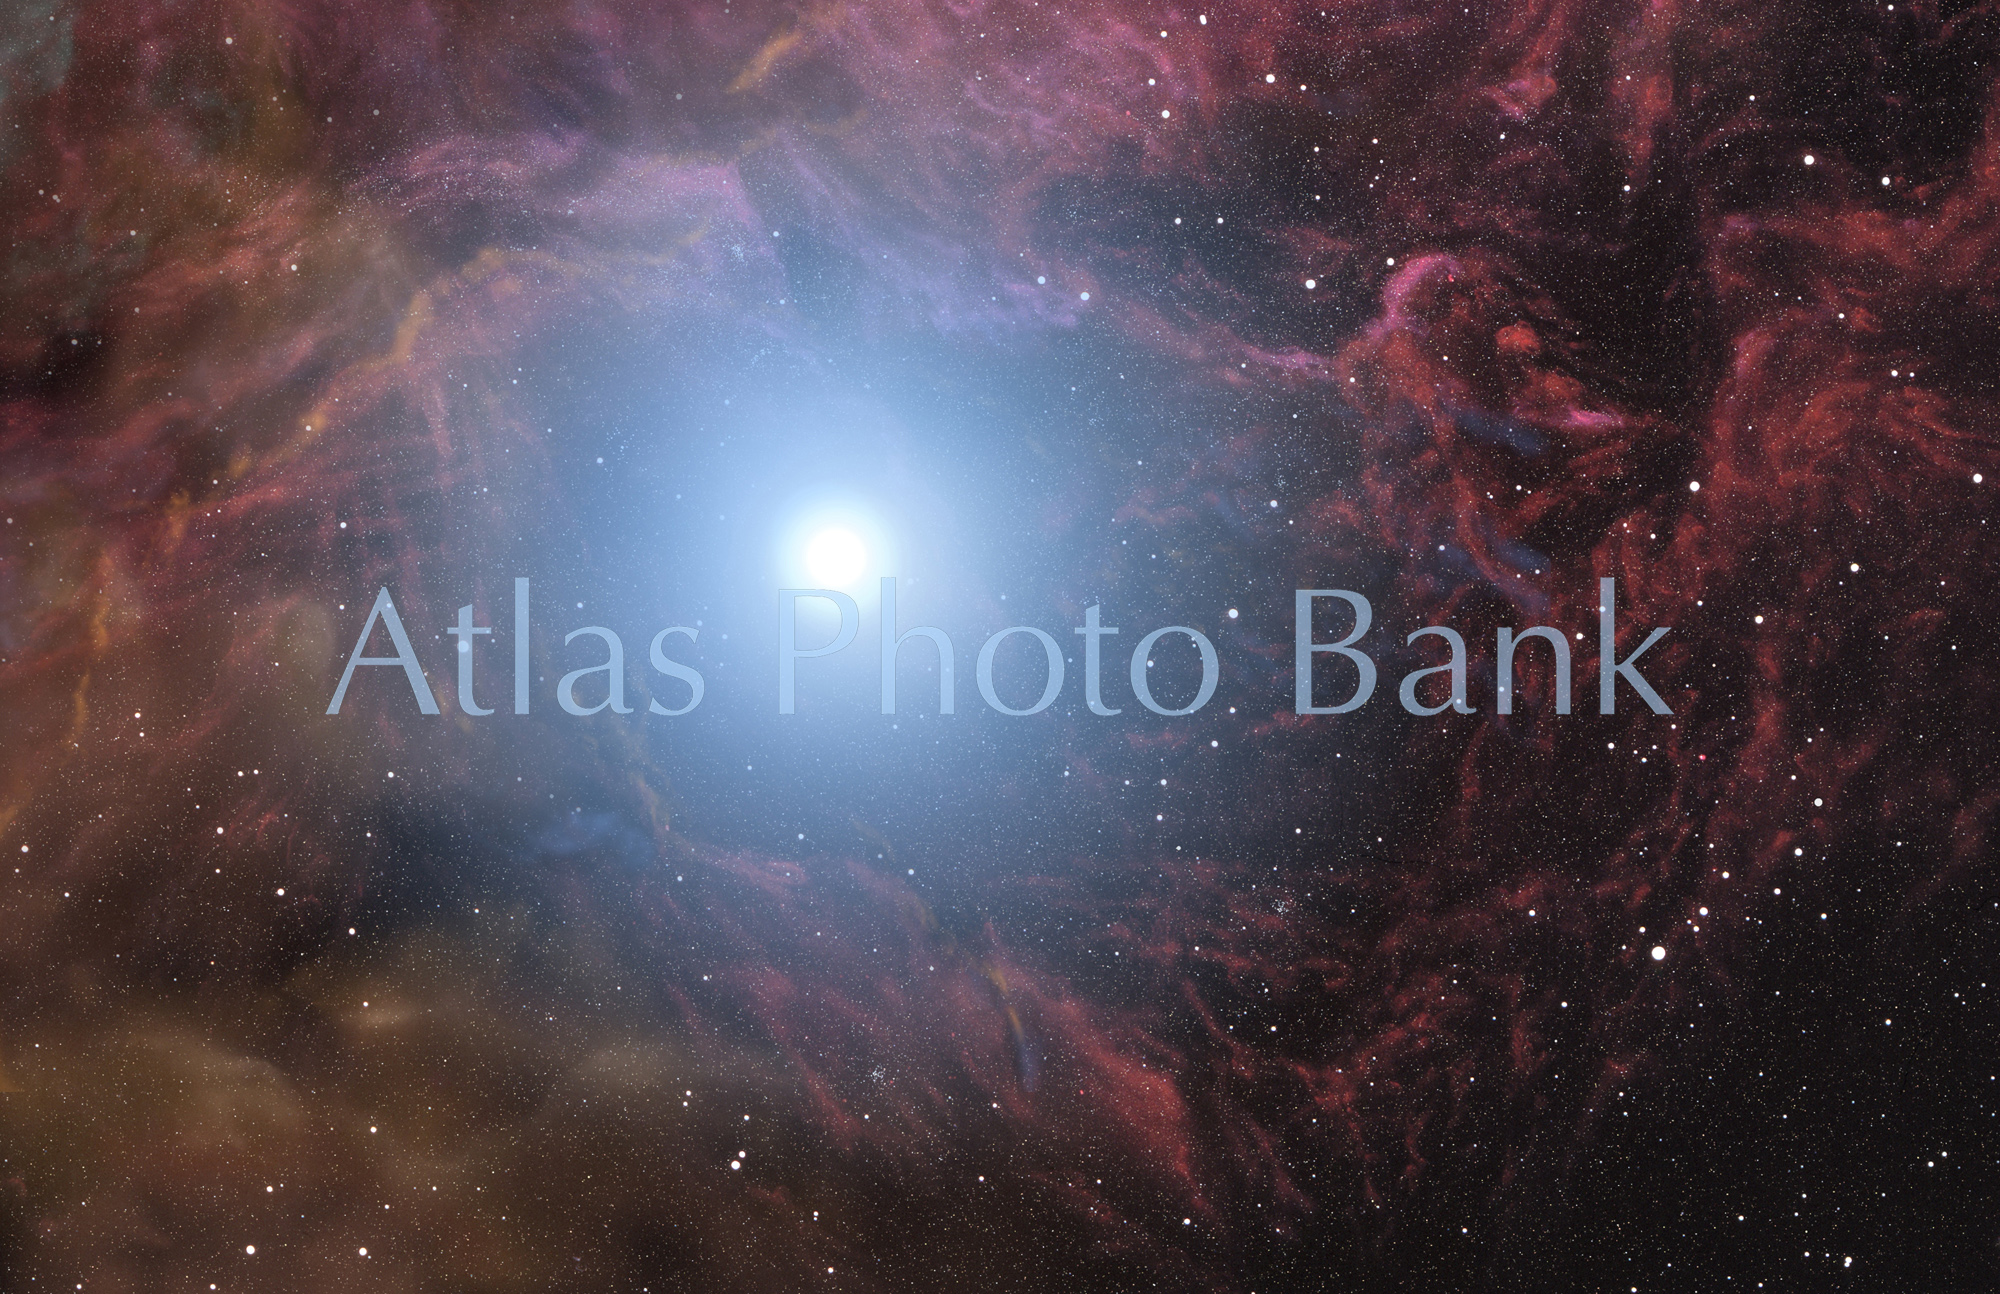 LS-011-暗黒星雲内部で星が誕生